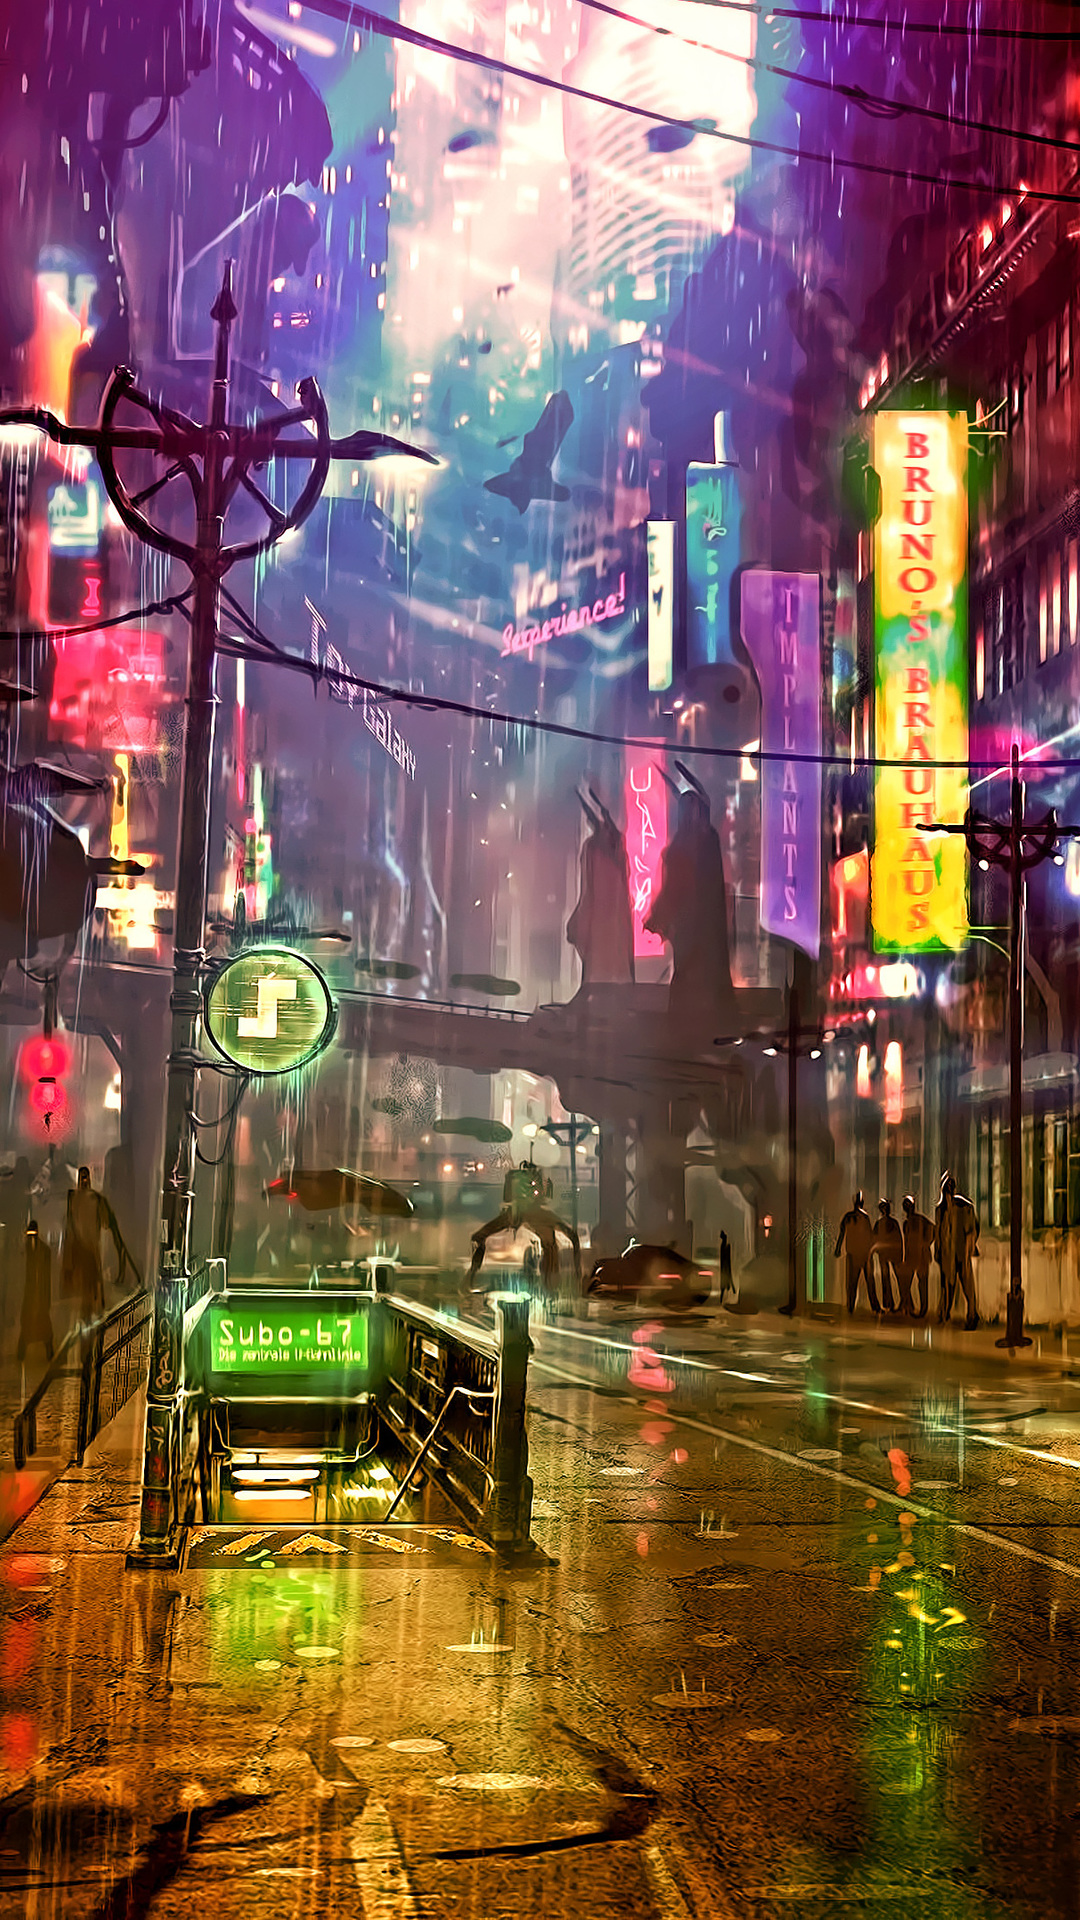 Cyberpunk, Neon, Artist, Artwork, Digital Art, Hd, - Cyberpunk Wallpaper 4k  Mobile - 1080x1920 Wallpaper 